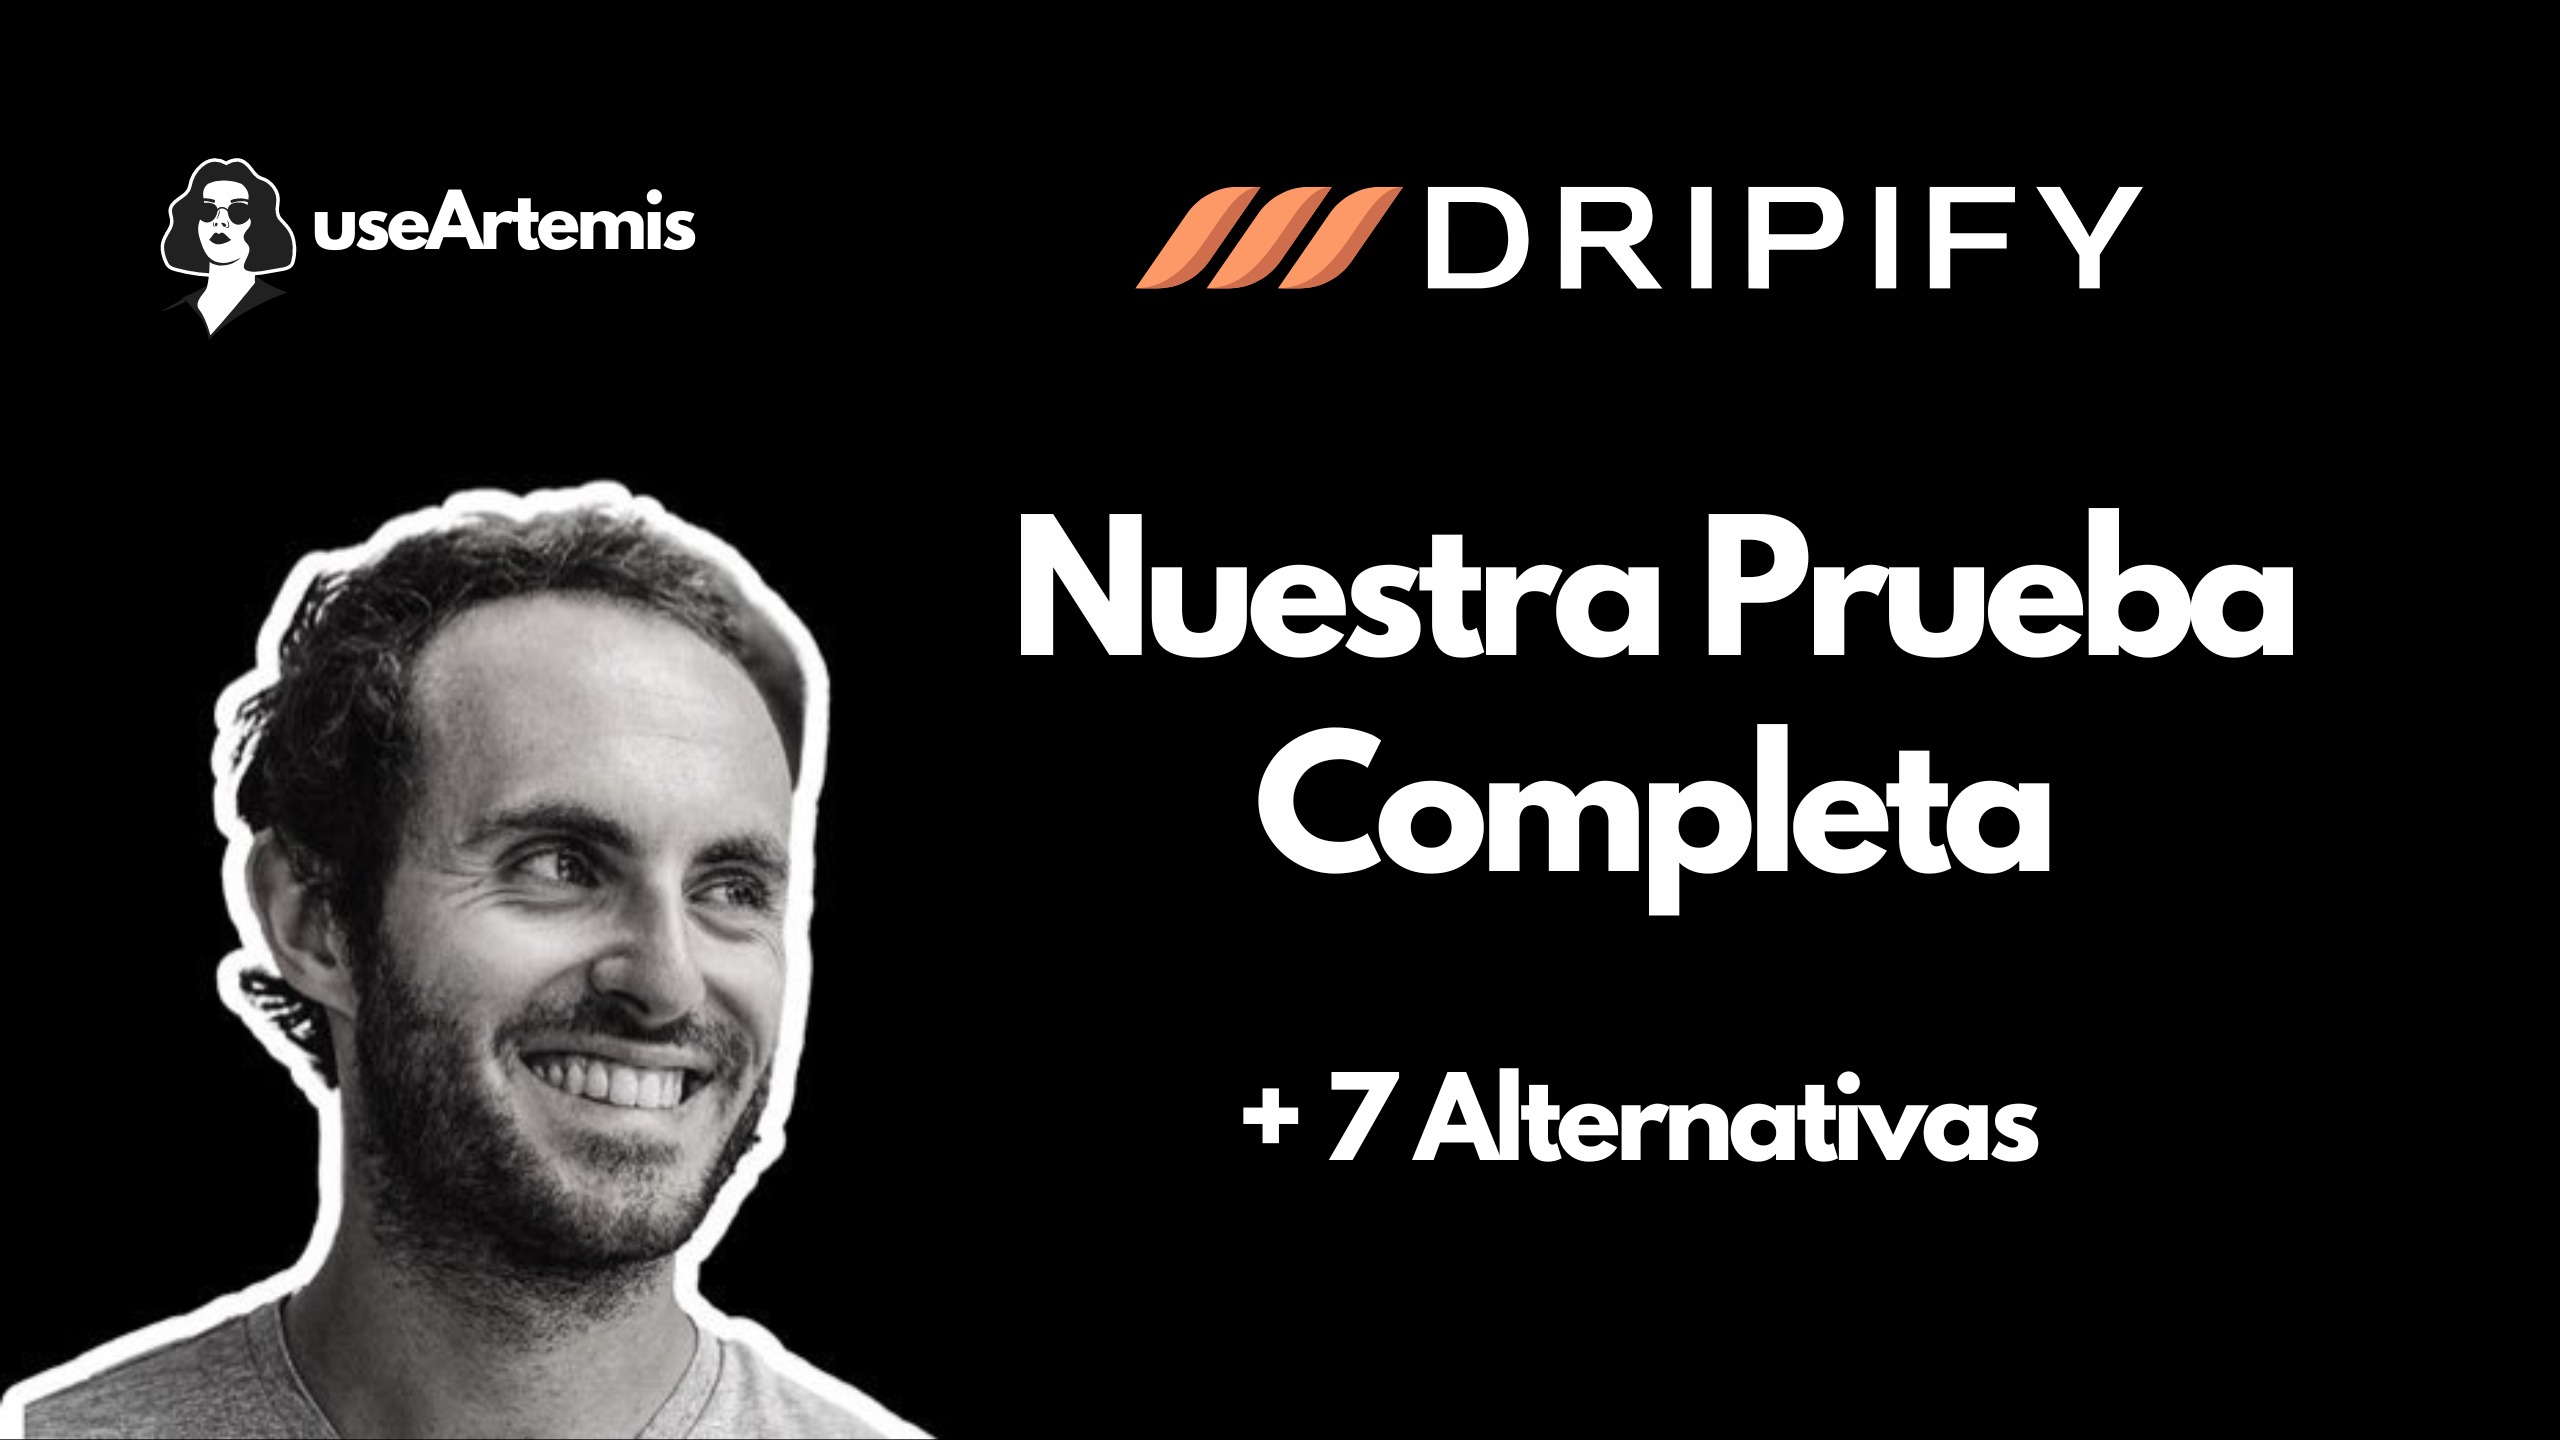 Dripify: Nuestra Prueba Completa + 7 Alternativas